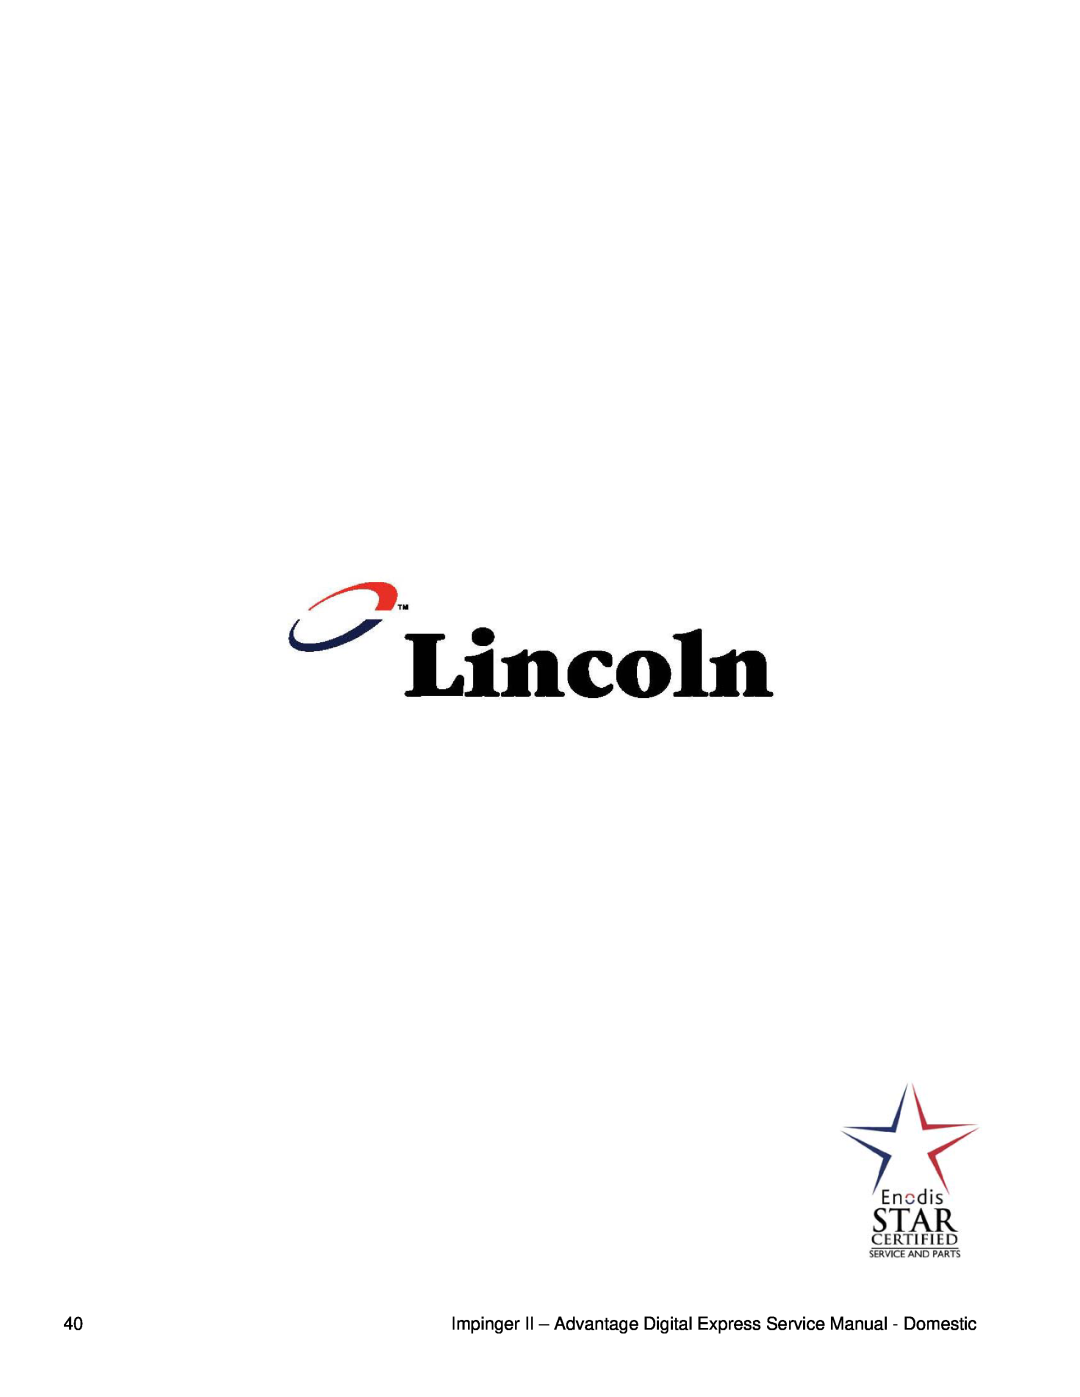 Lincoln 1133-08H-A, 1162-080-A, 1132-080-A, 1131-08H-A, 1132-08H-A, 1116-080-A1, 1130-08H-A, 1161-080-A, 1131-080-A, 1133-080-A 